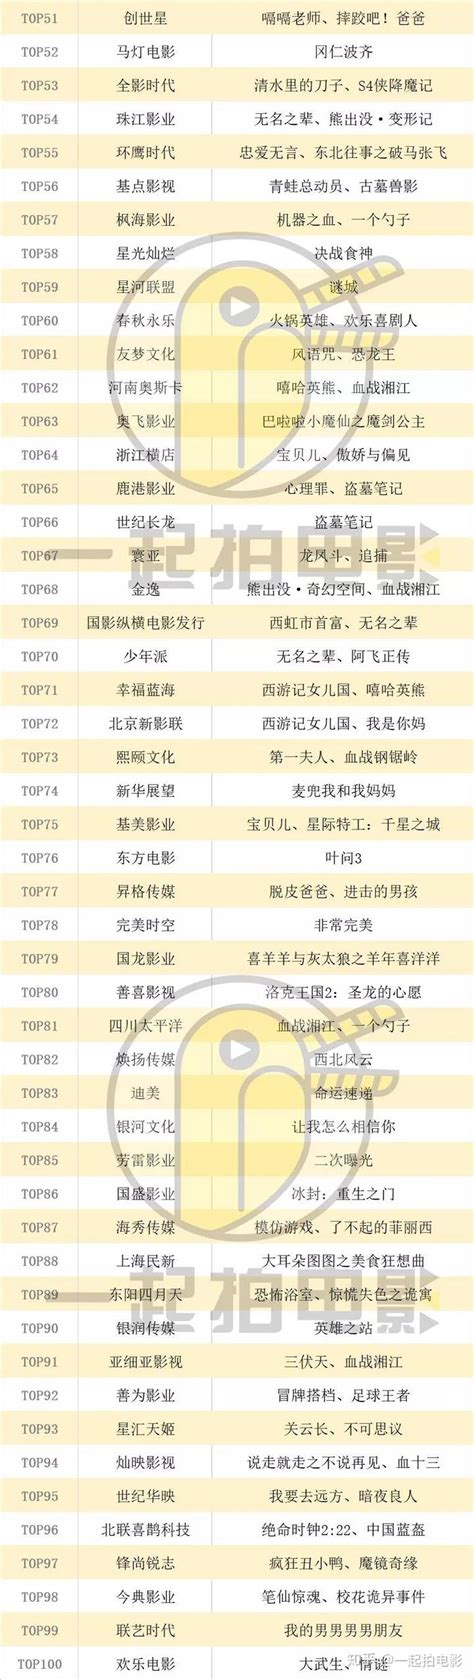 2018中国电影发行公司TOP100权力榜出炉，影联、博纳、光线位列前三甲！ - 知乎